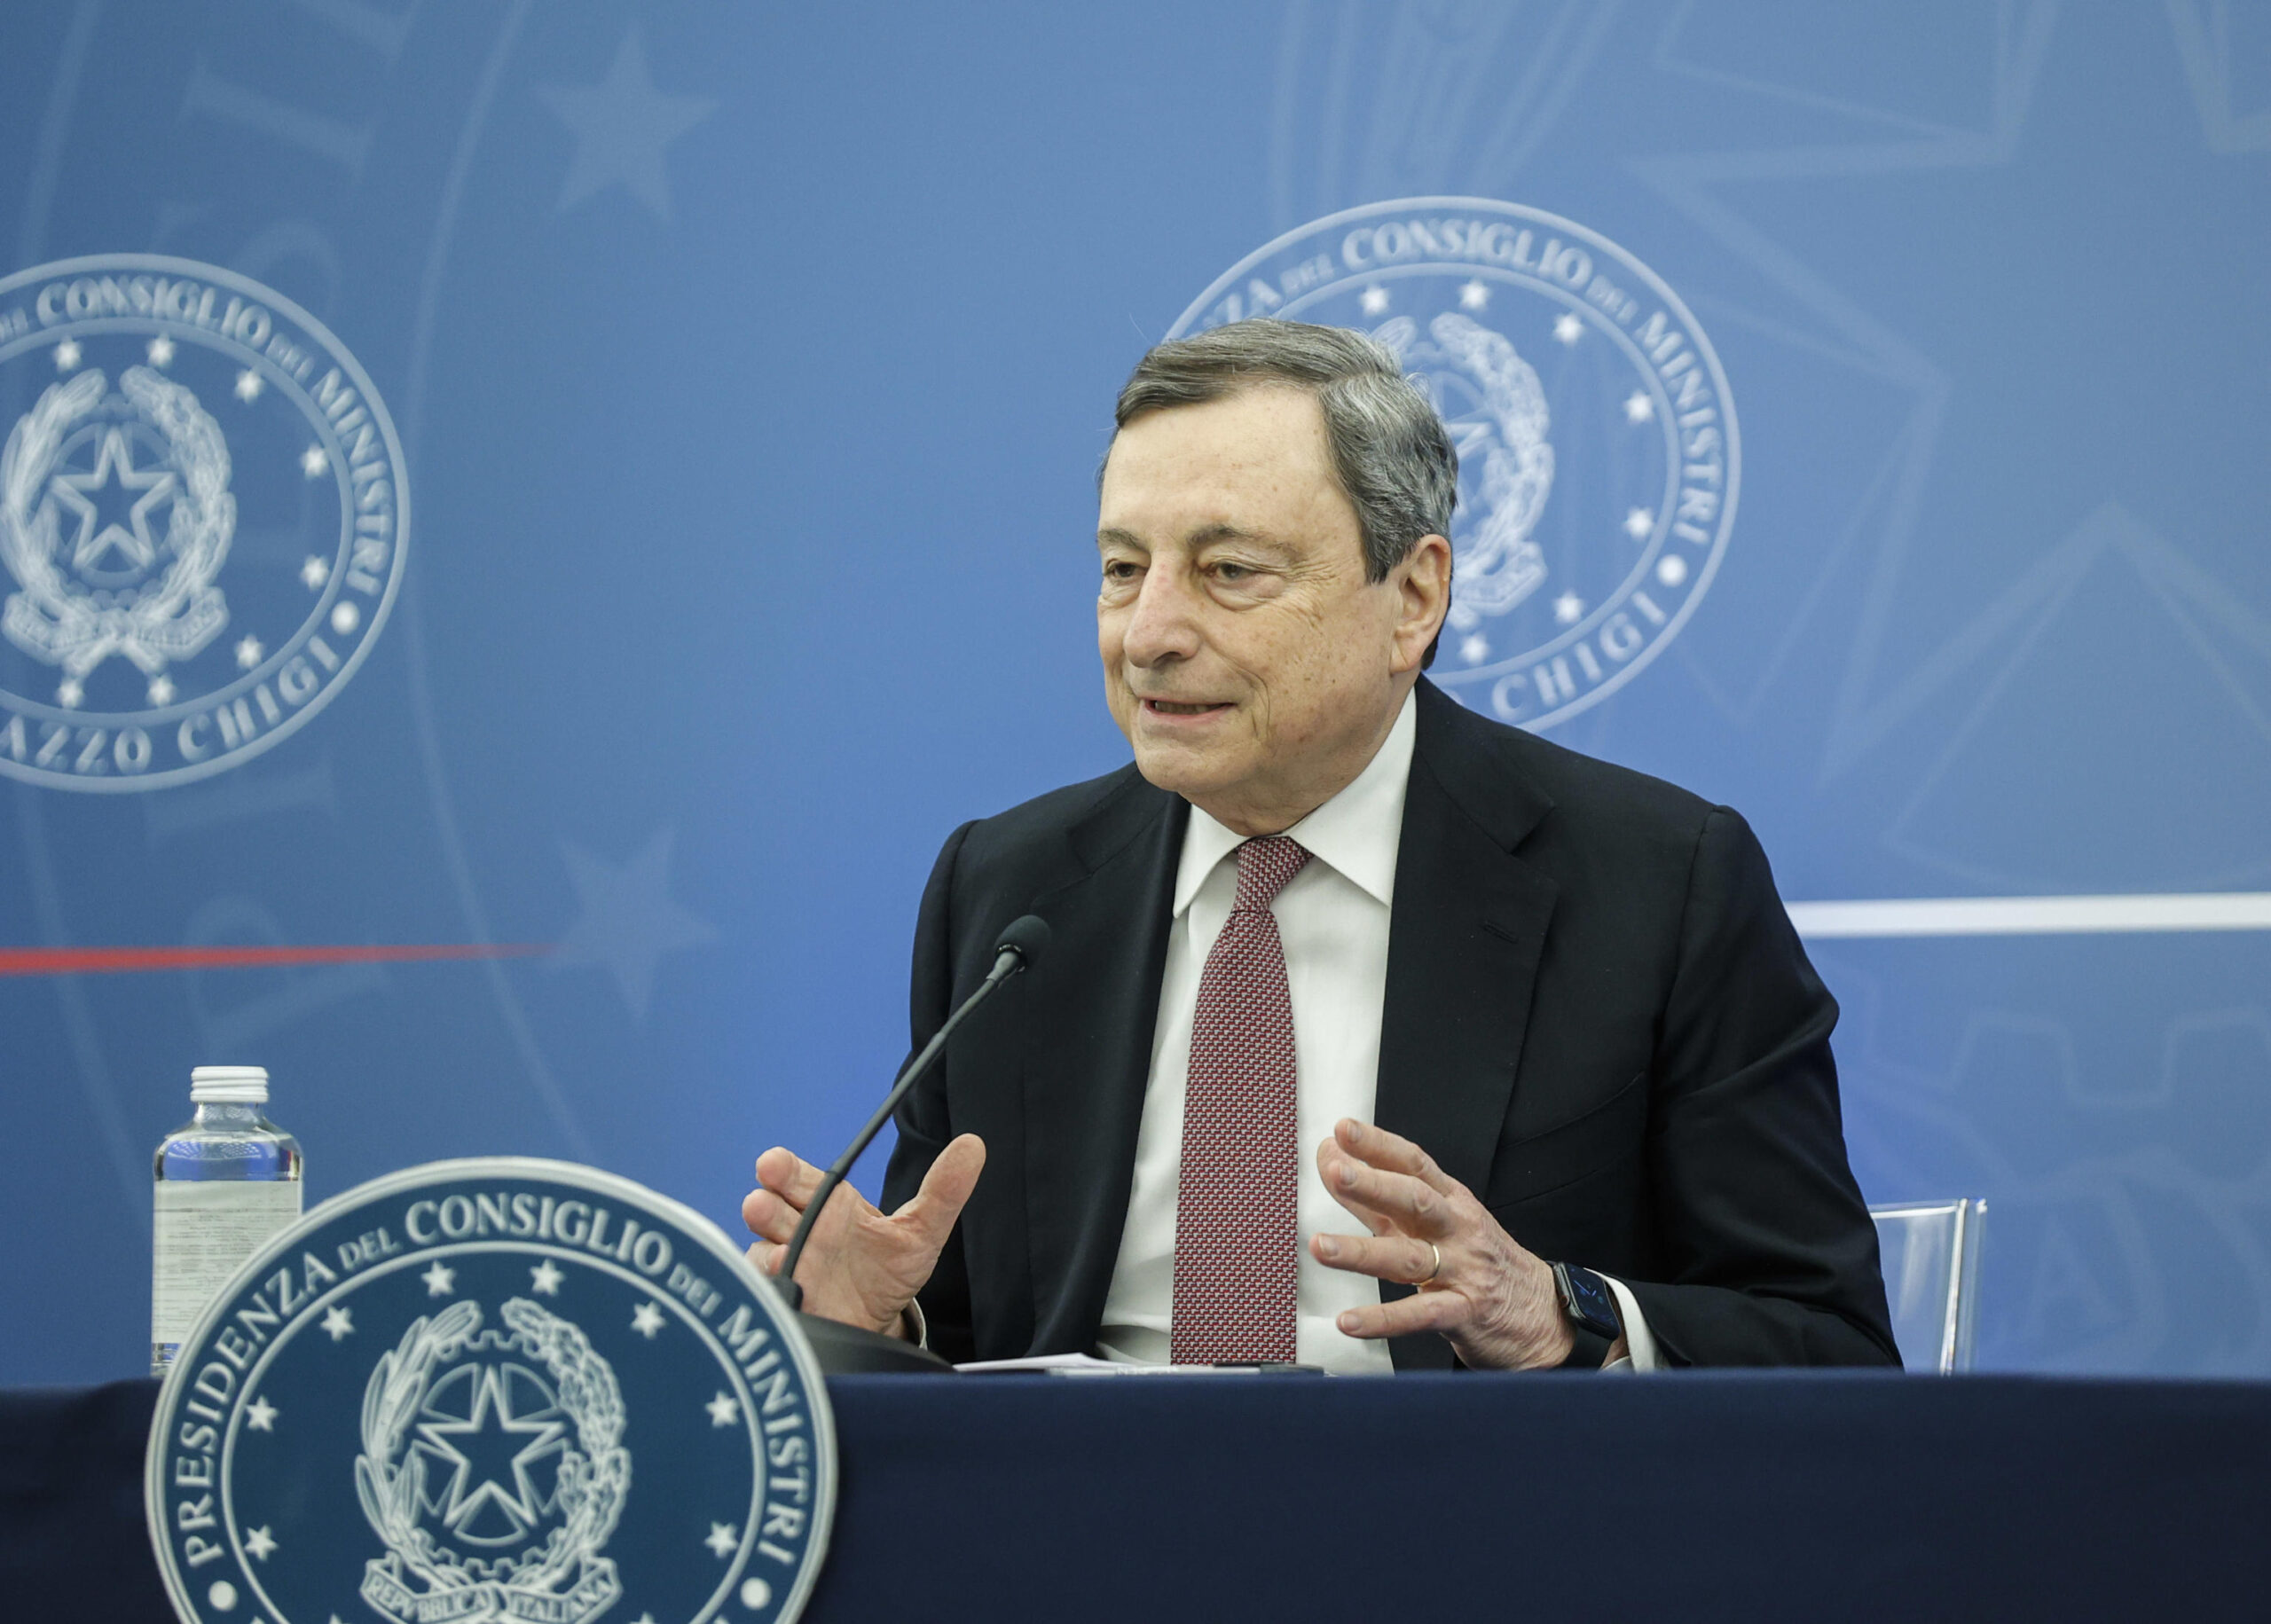 il presidente del Consiglio Mario Draghi nella sala Polifunzionale duranta conferenza stampa al termine della riunione del Consiglio dei Ministri, Roma, 6 Aprile 2022. ANSA/GIUSEPPE LAMI - pool